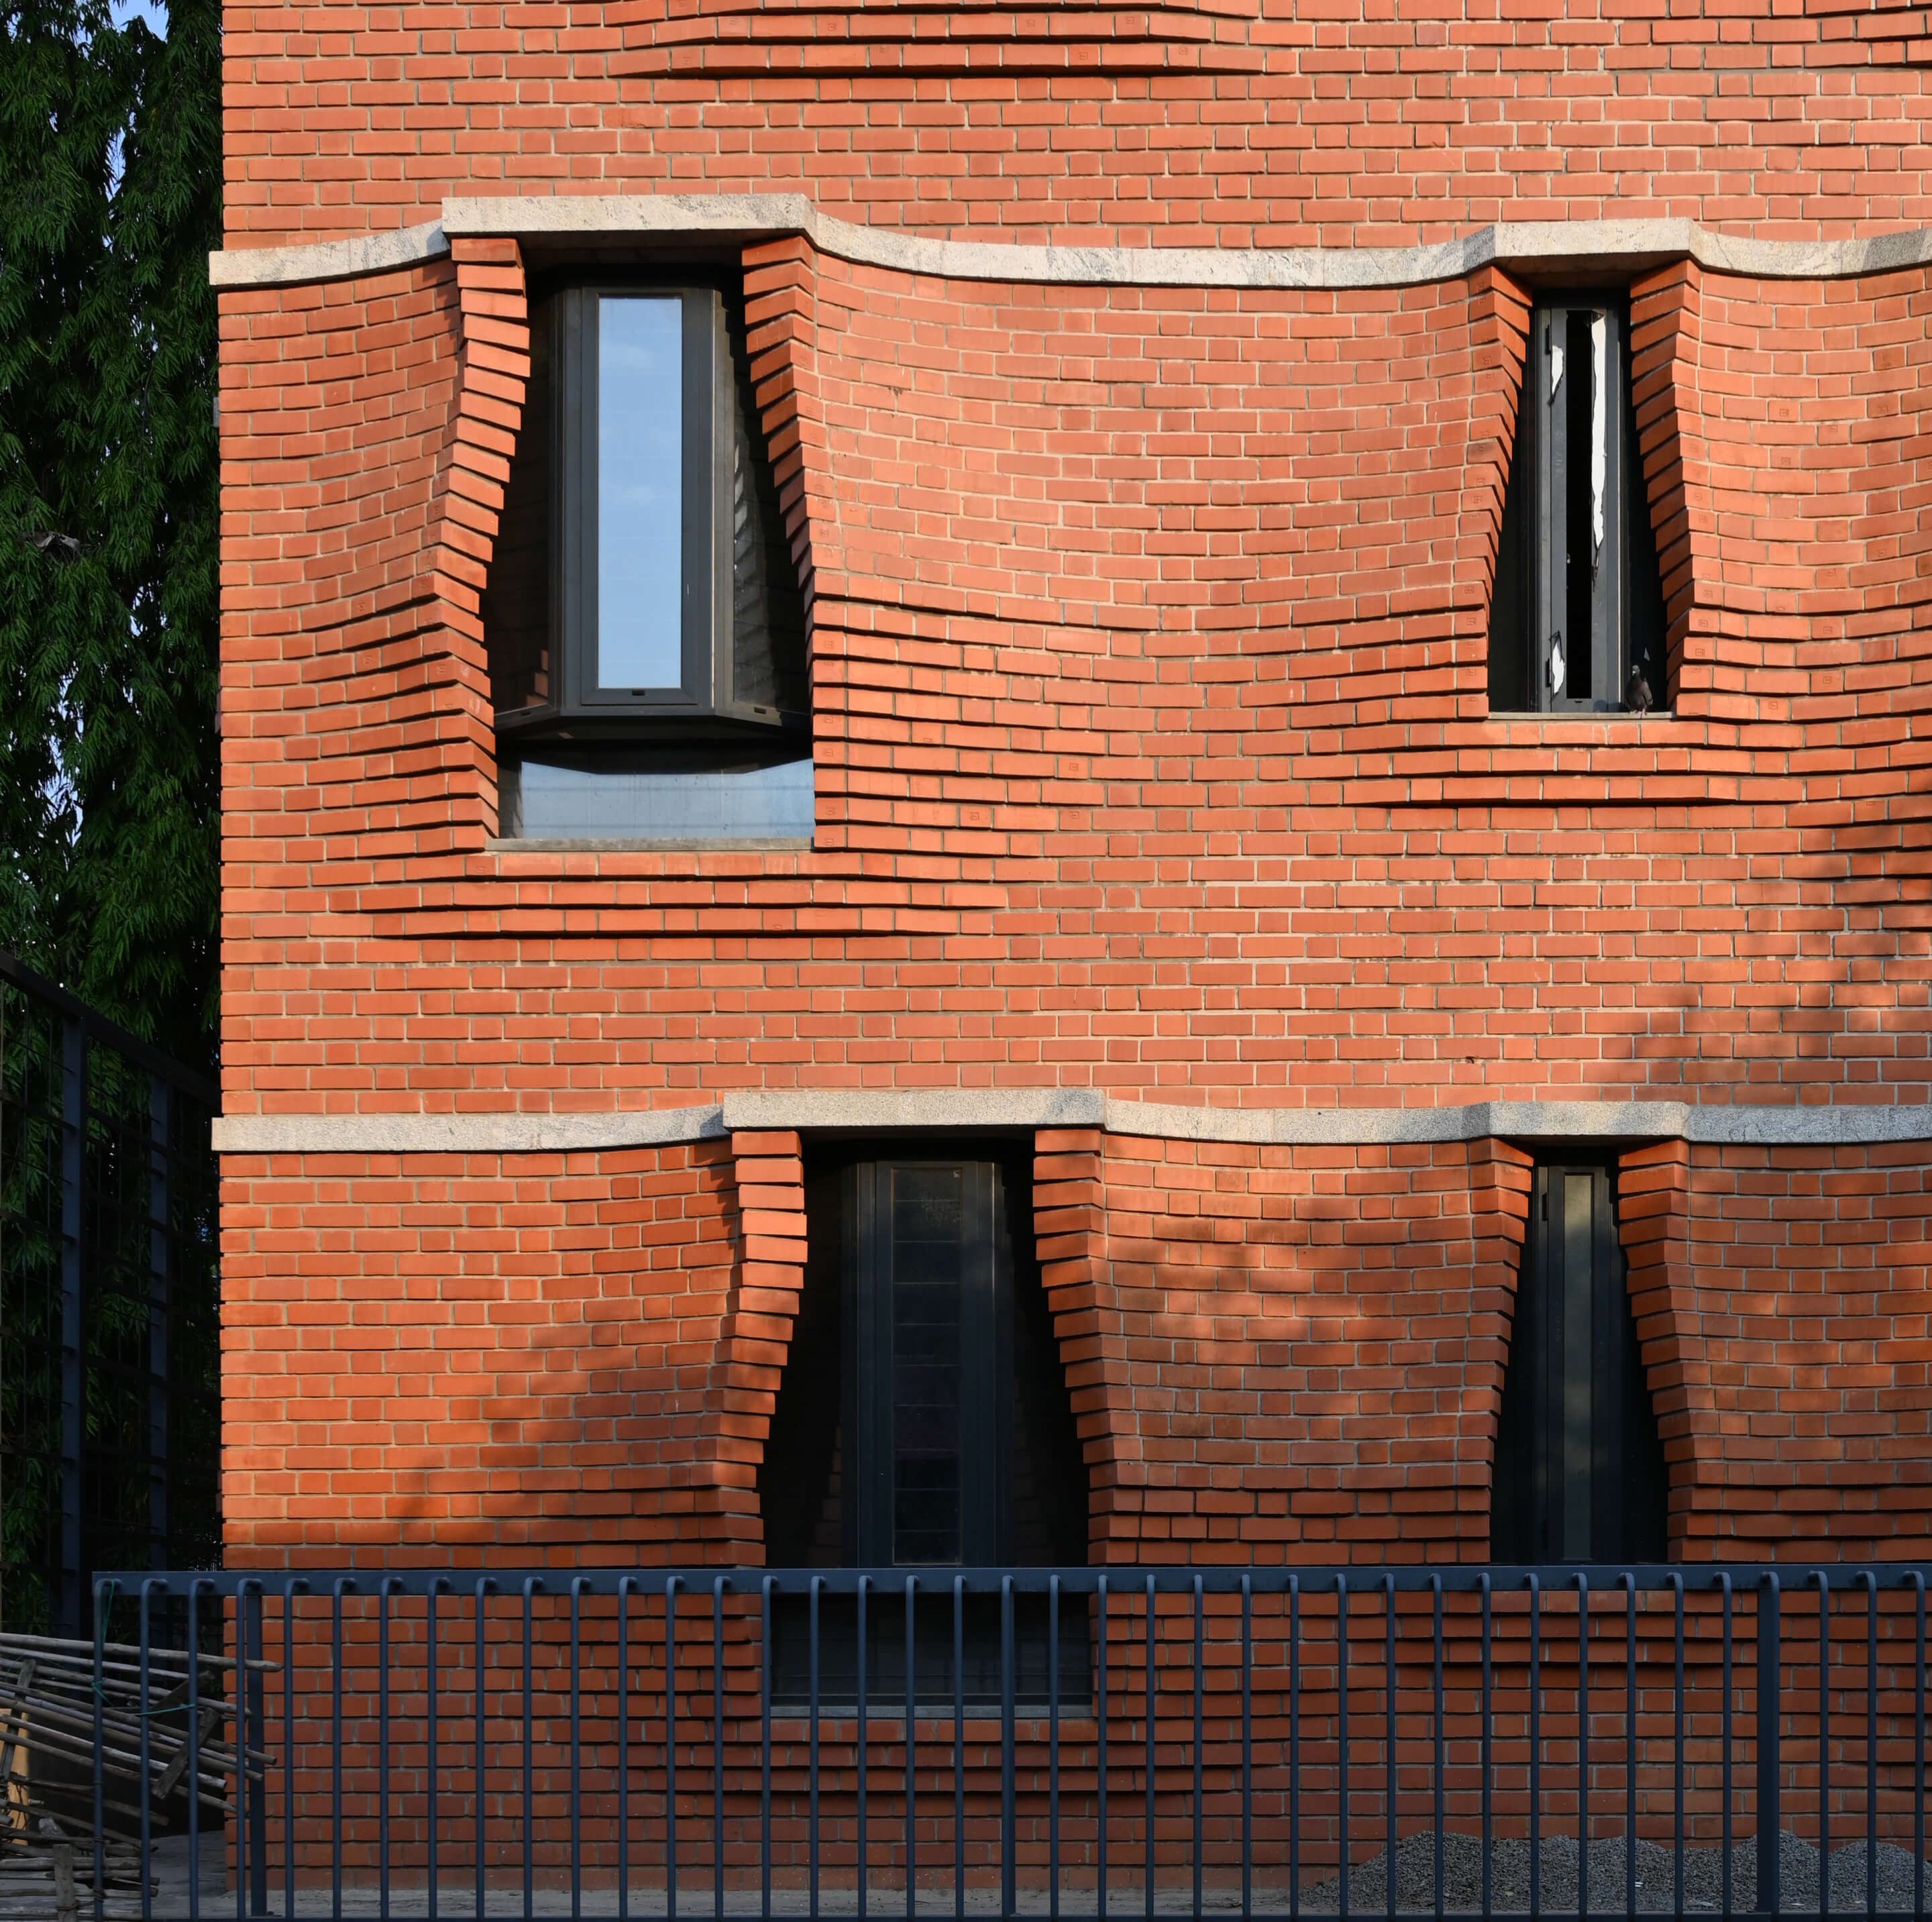 A brick facade splayed open with windows peeking through